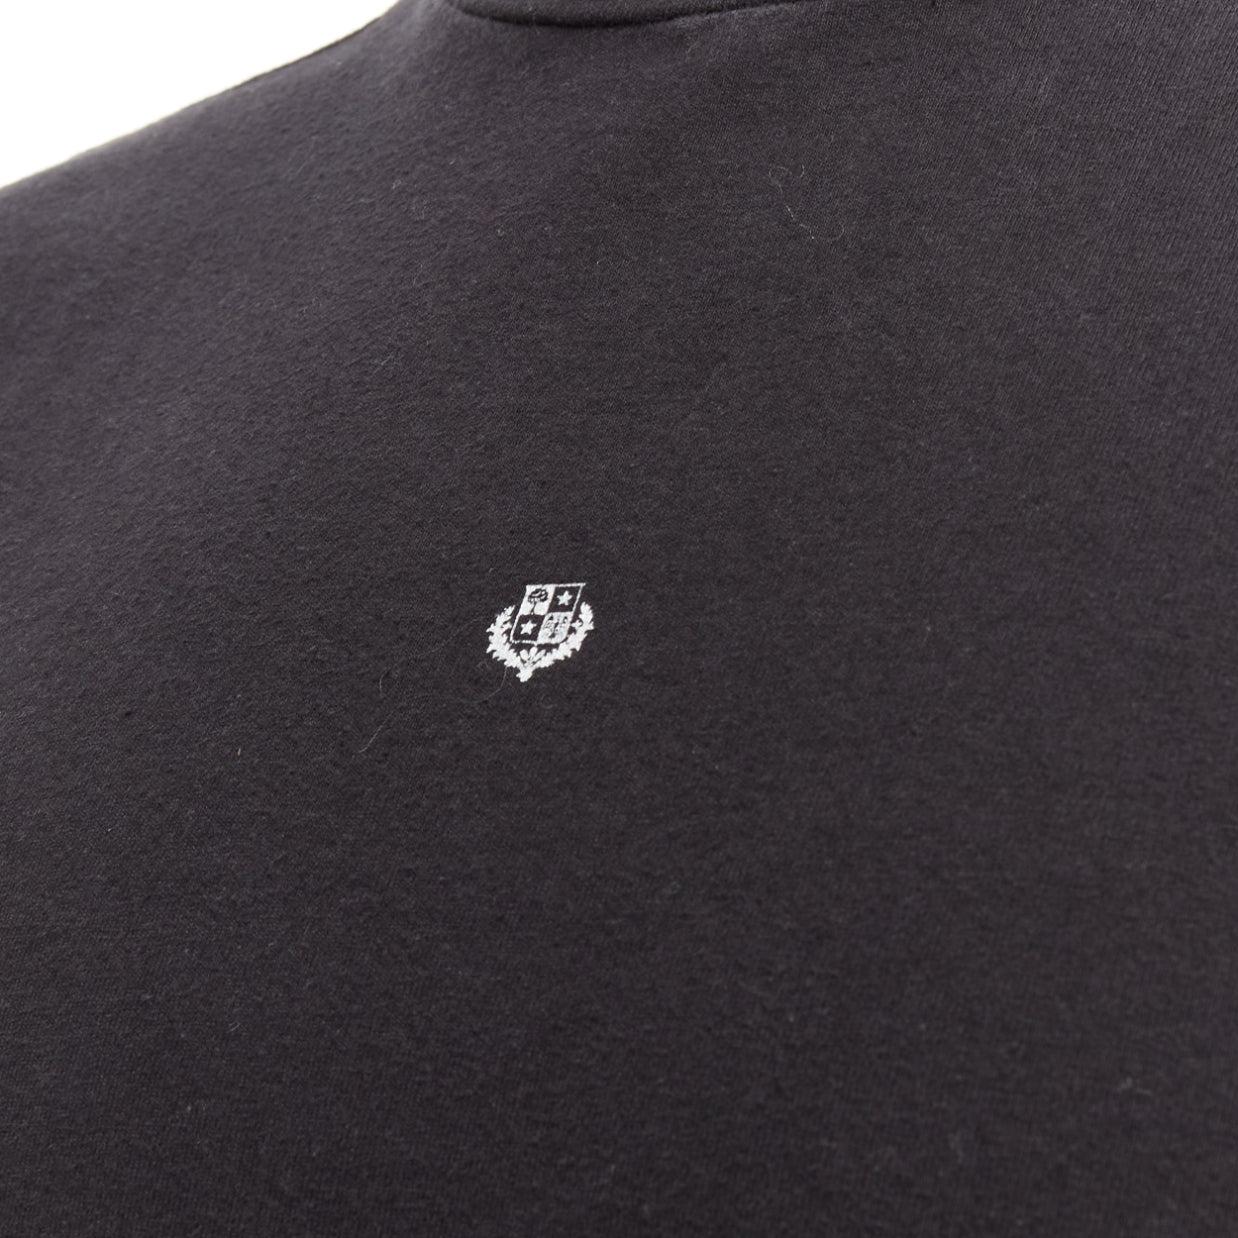 LORO PIANA Hiroshi Fujiwara black cotton white logo tshirt S For Sale 2